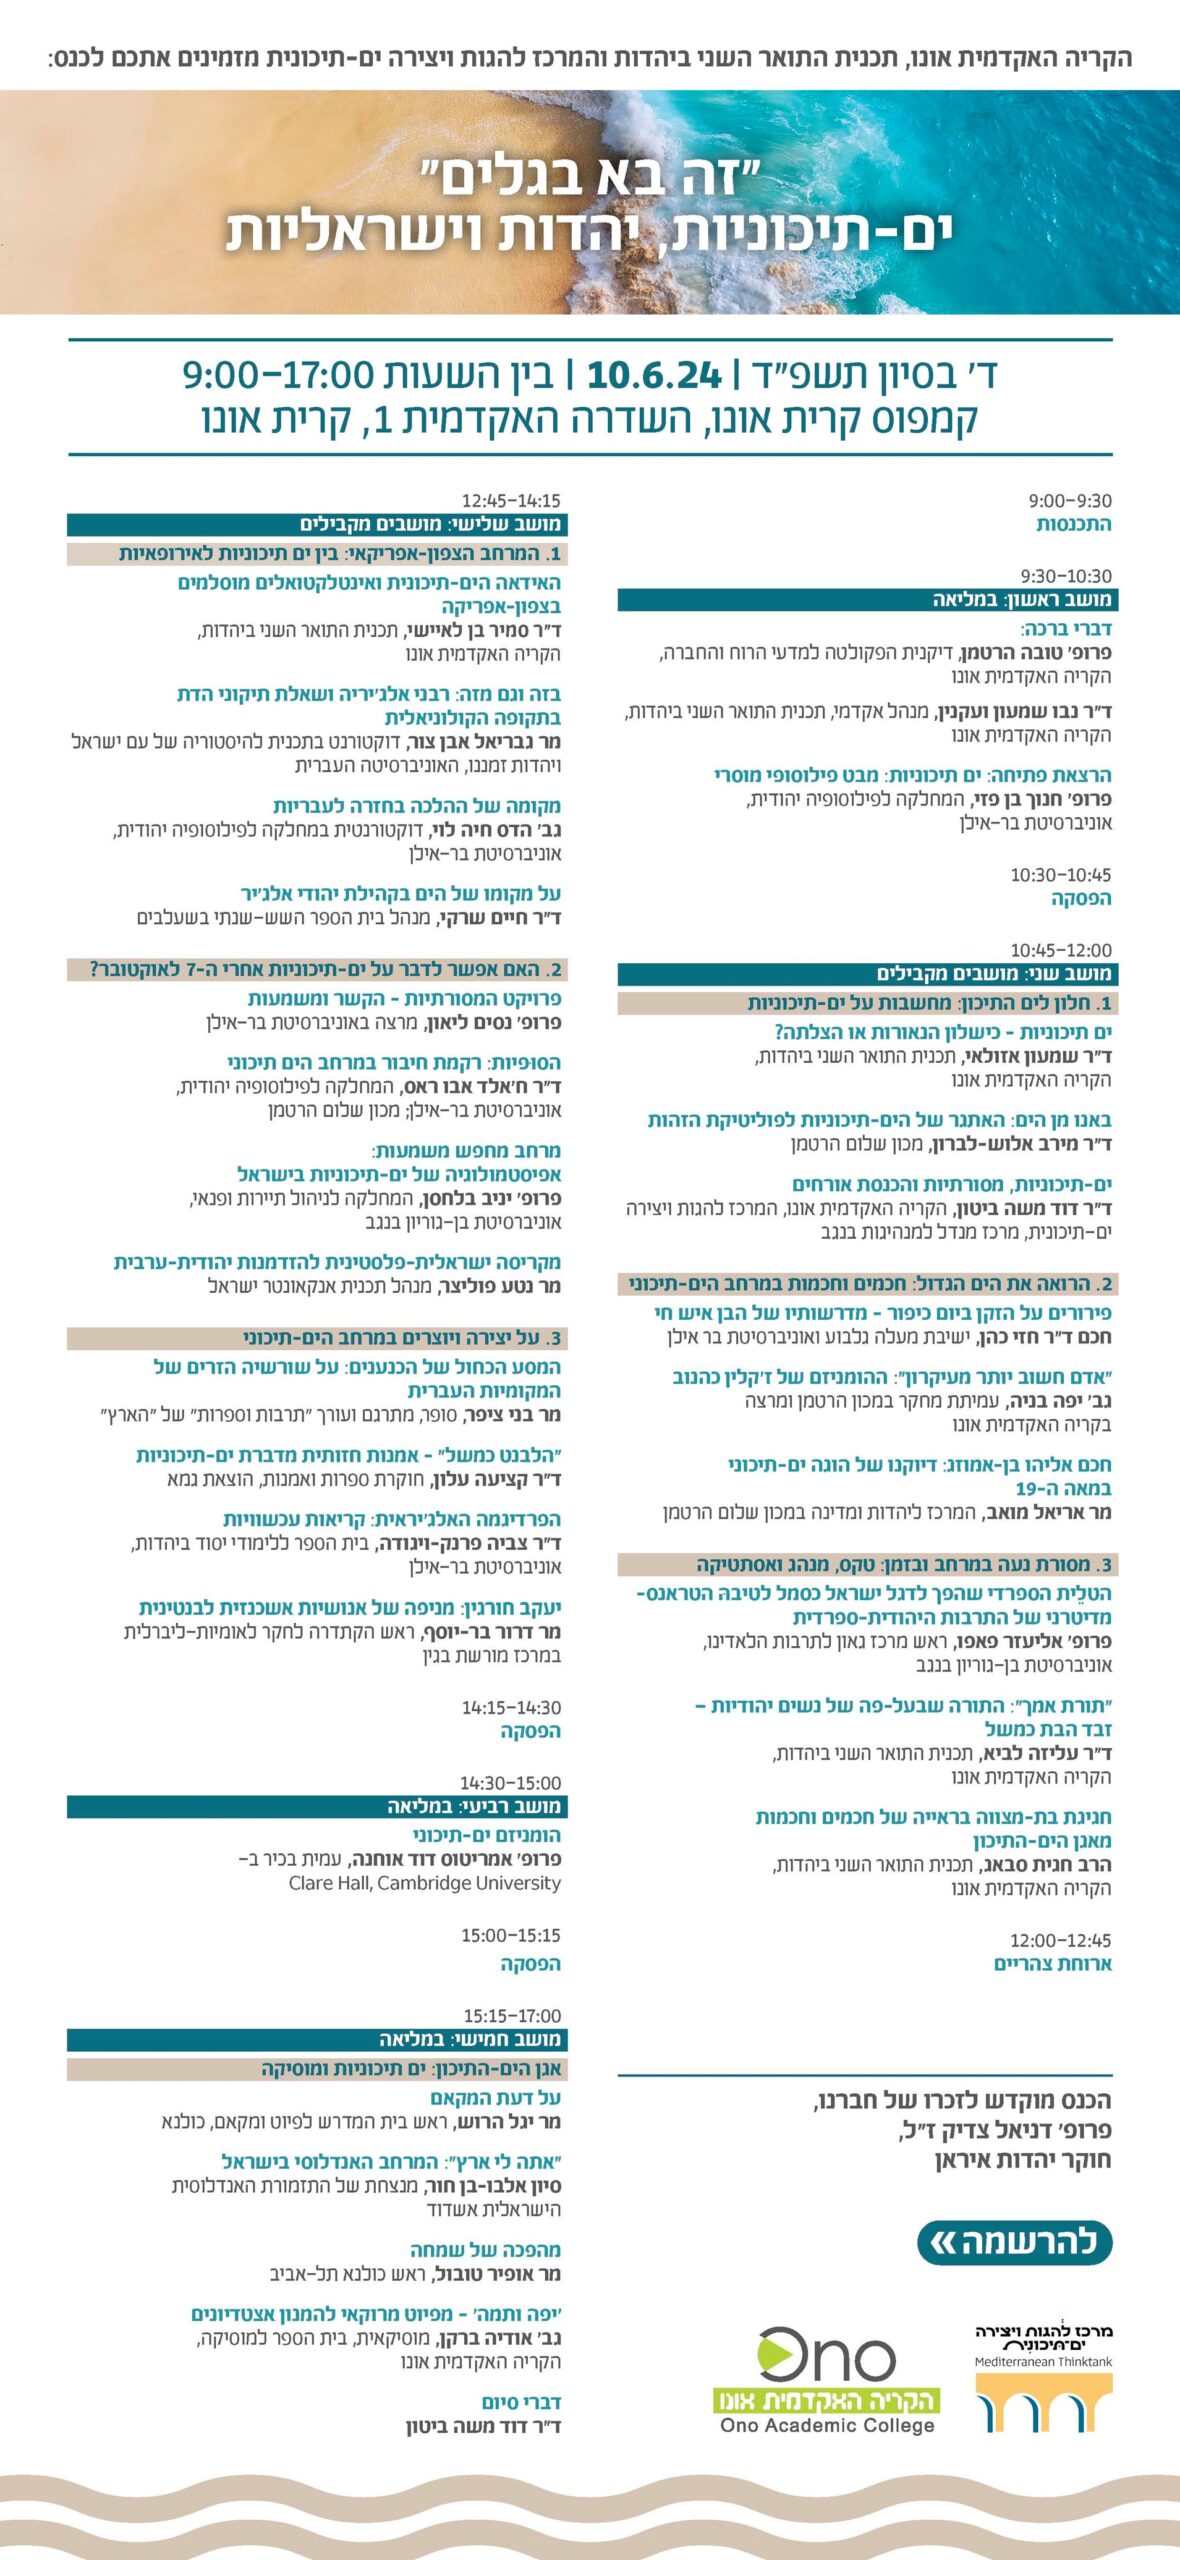 Mediterranean Conference Schedule